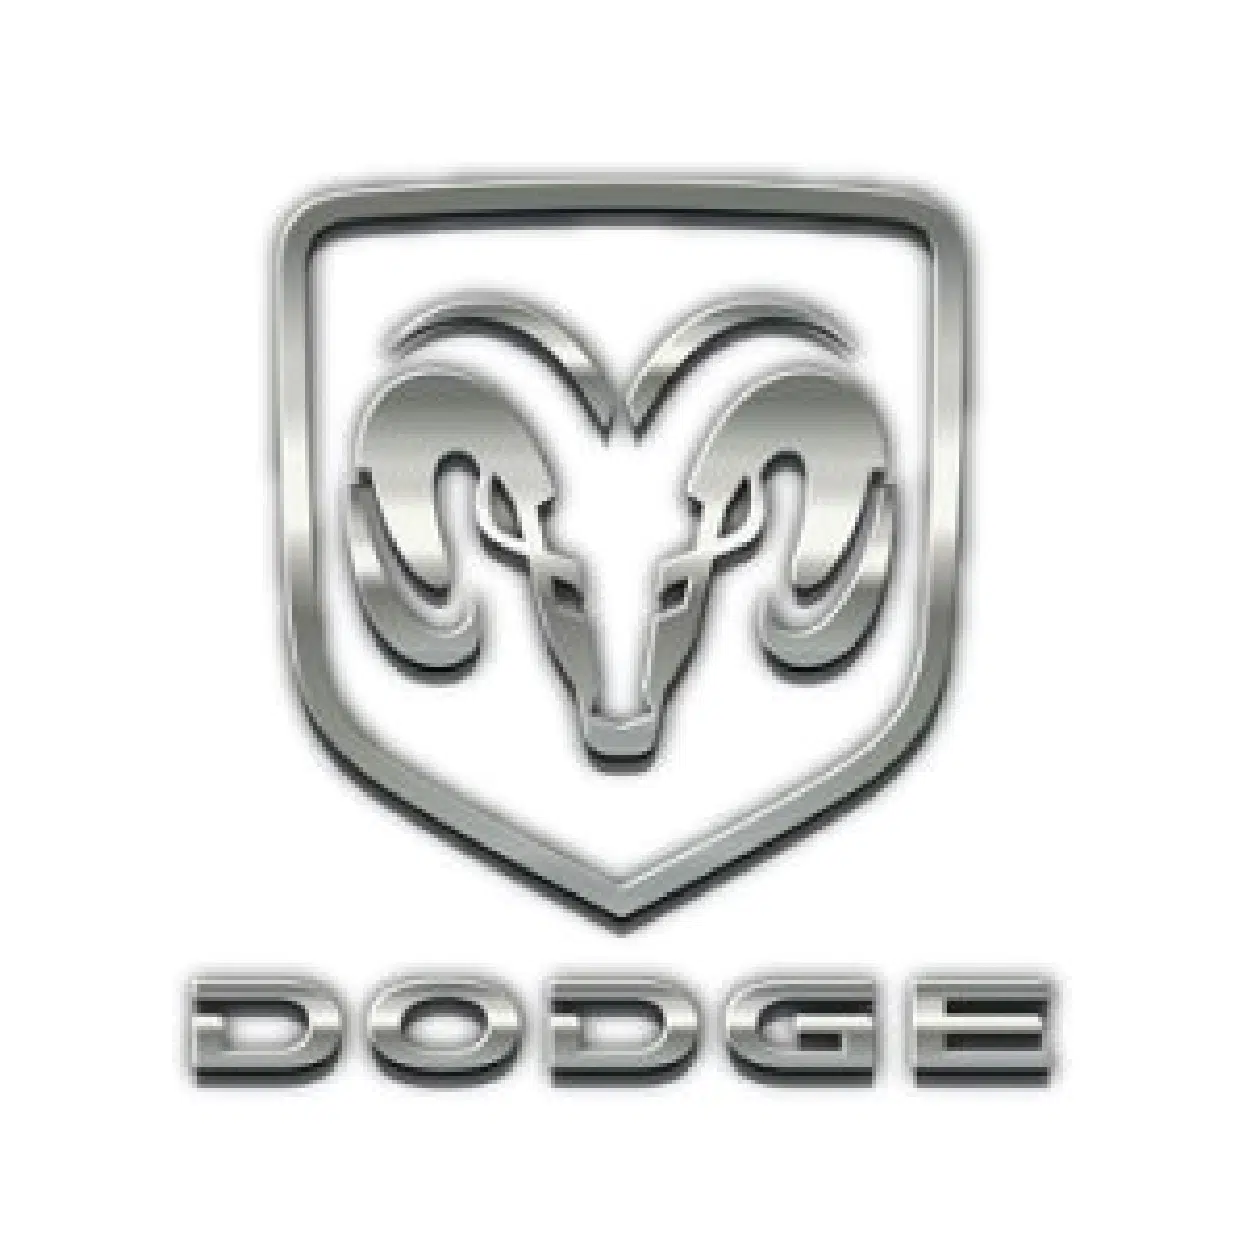 dodge-wadex-serwiskluczy24-pl